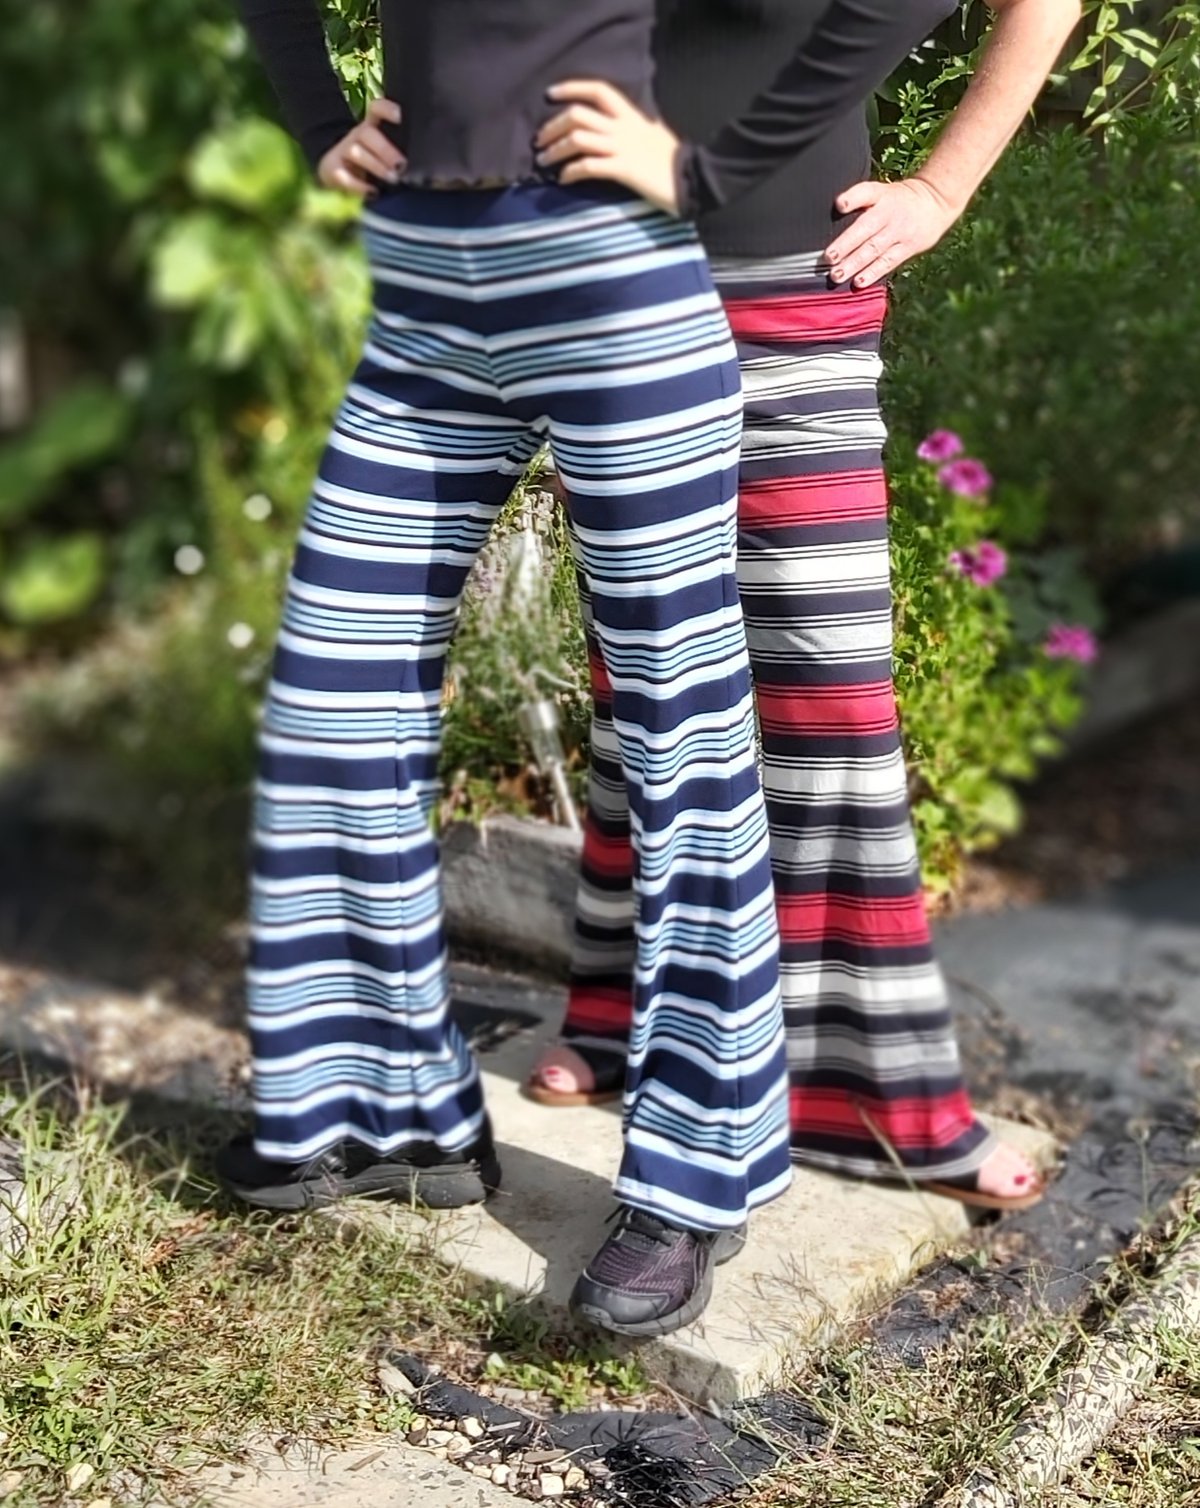 Image of Nauti Stripe KAT Pants